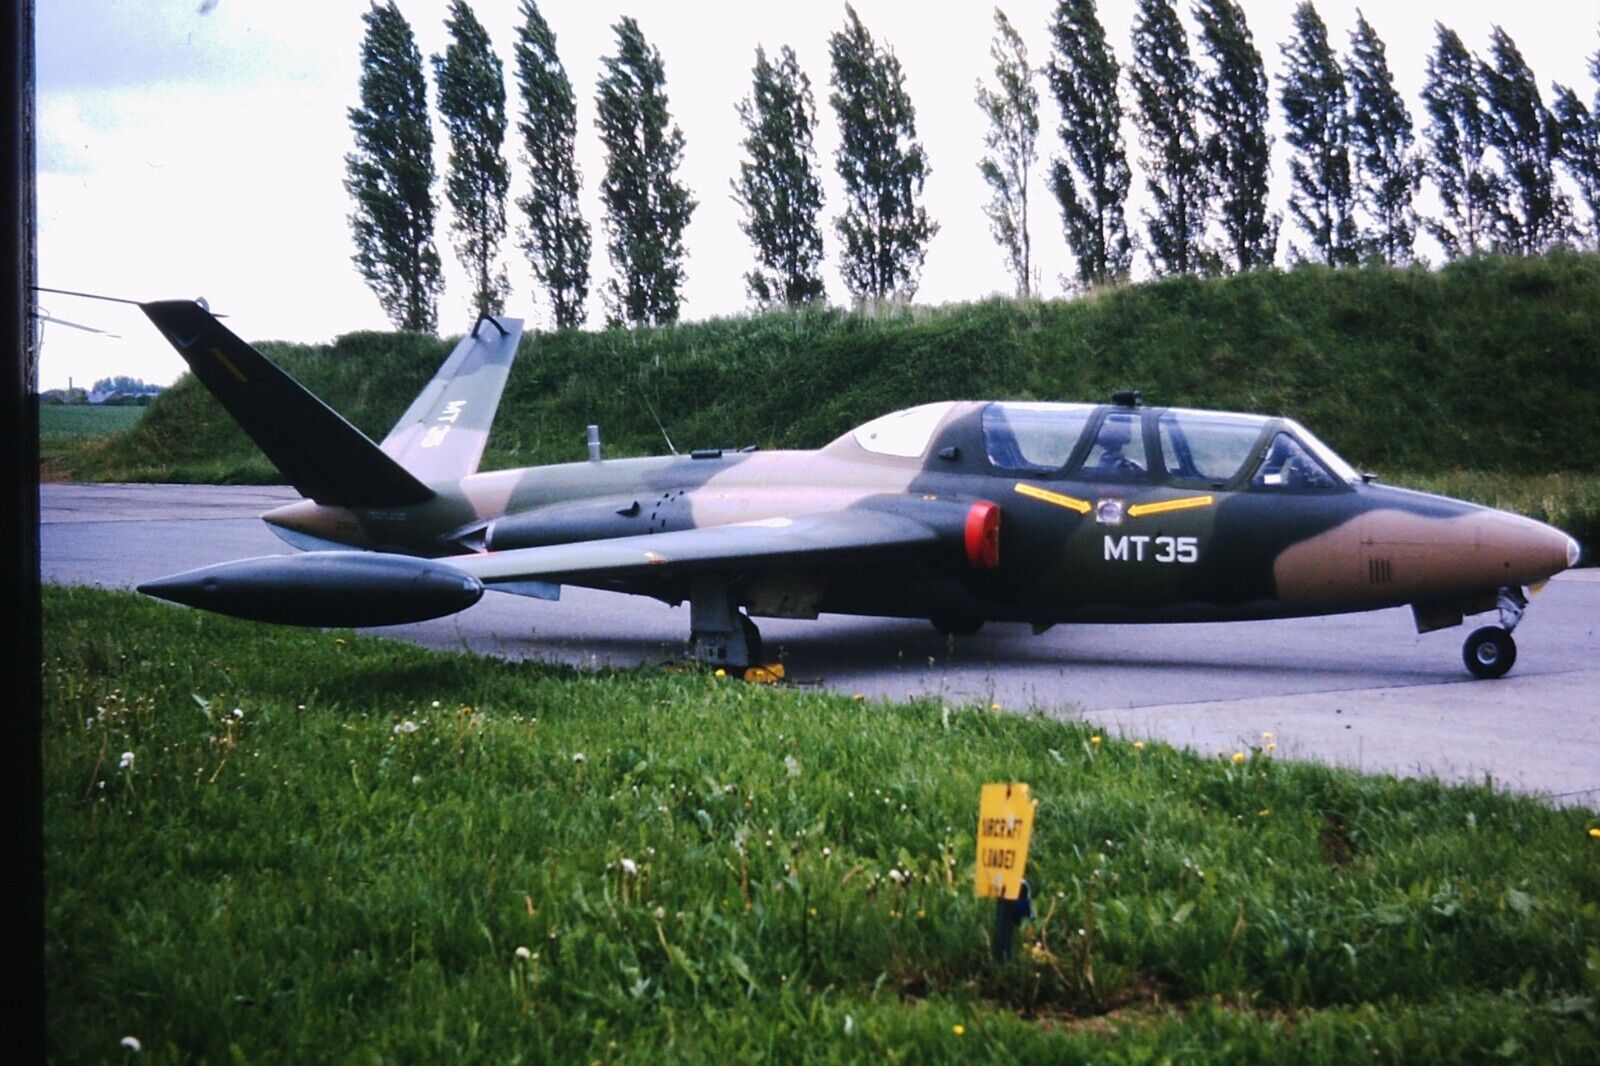 CM-170 MT-35  Belgium AF    35 mm aircraft slide  CF